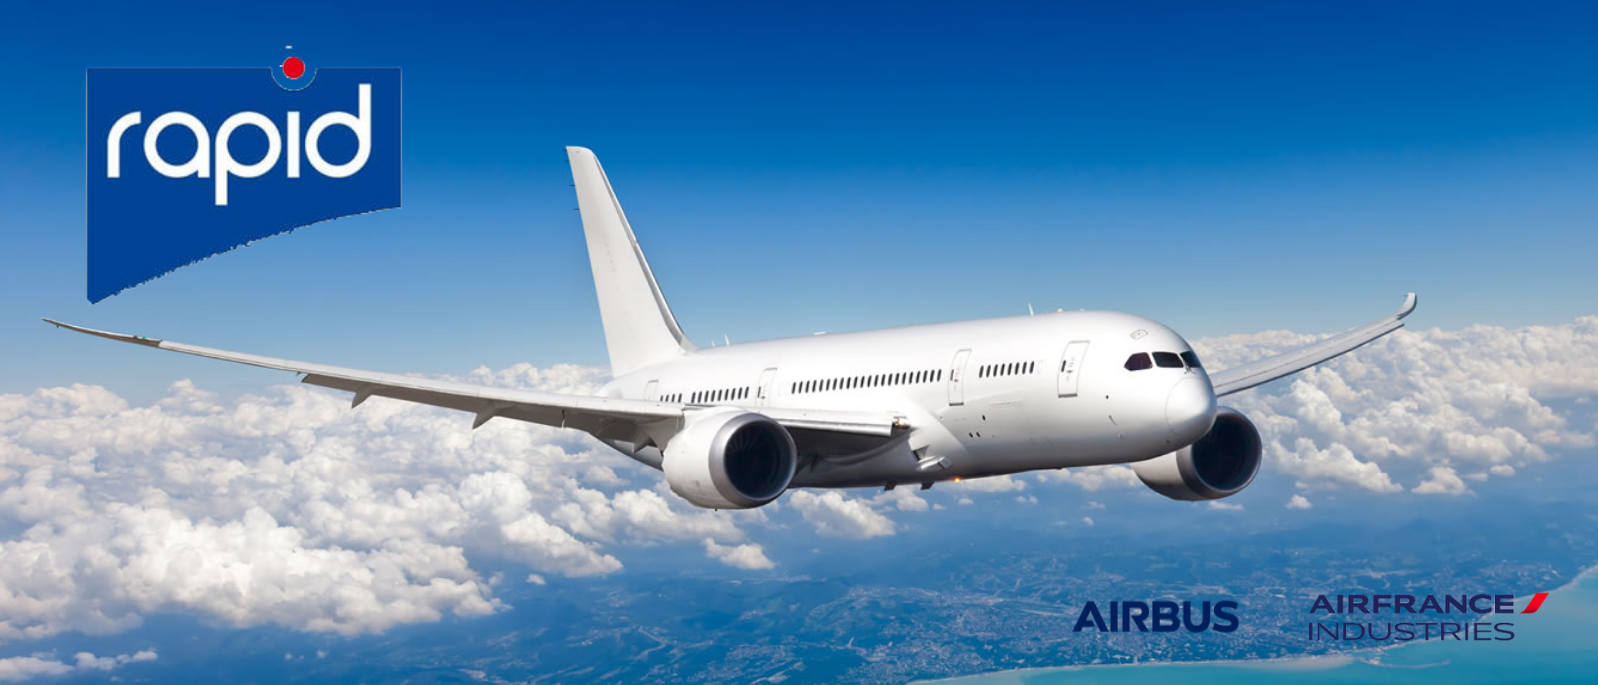 Mise en place d'un projet rapide avec Airbus et Air France Industrie pour la création d'un patch de réparation rapide de peinture sur avions